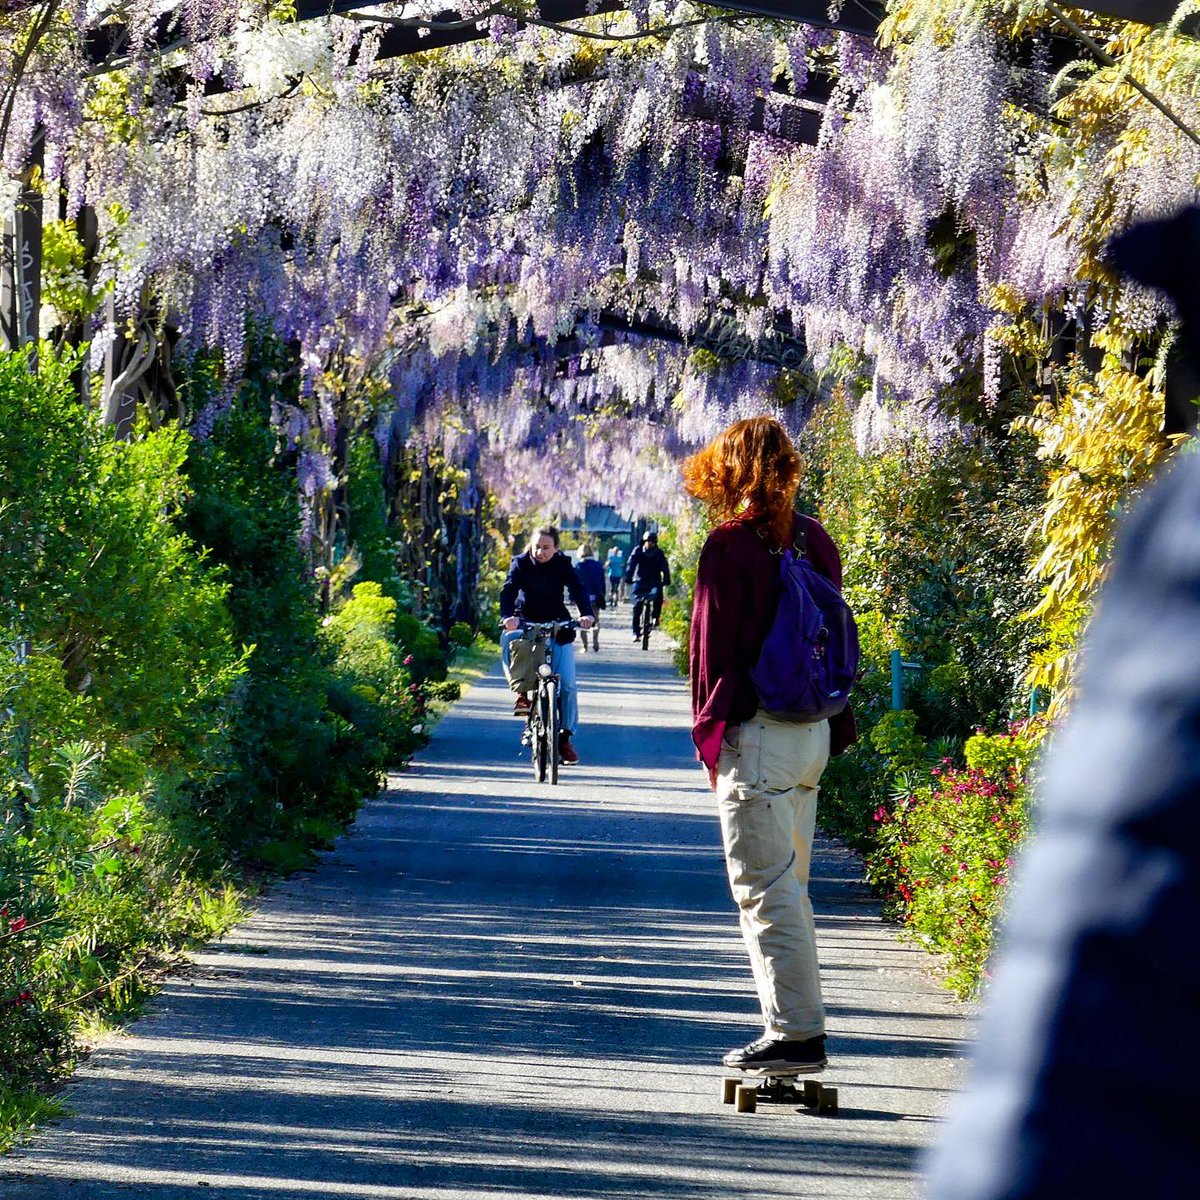 Le printemps à #Bordeaux 🌸 Avez-vous déjà fait un tour au parc aux Angéliques à cette saison ? Toutes les glycines sont en fleurs, c'est magnifique 🥰 📸 babchoup - Instagram #printemps